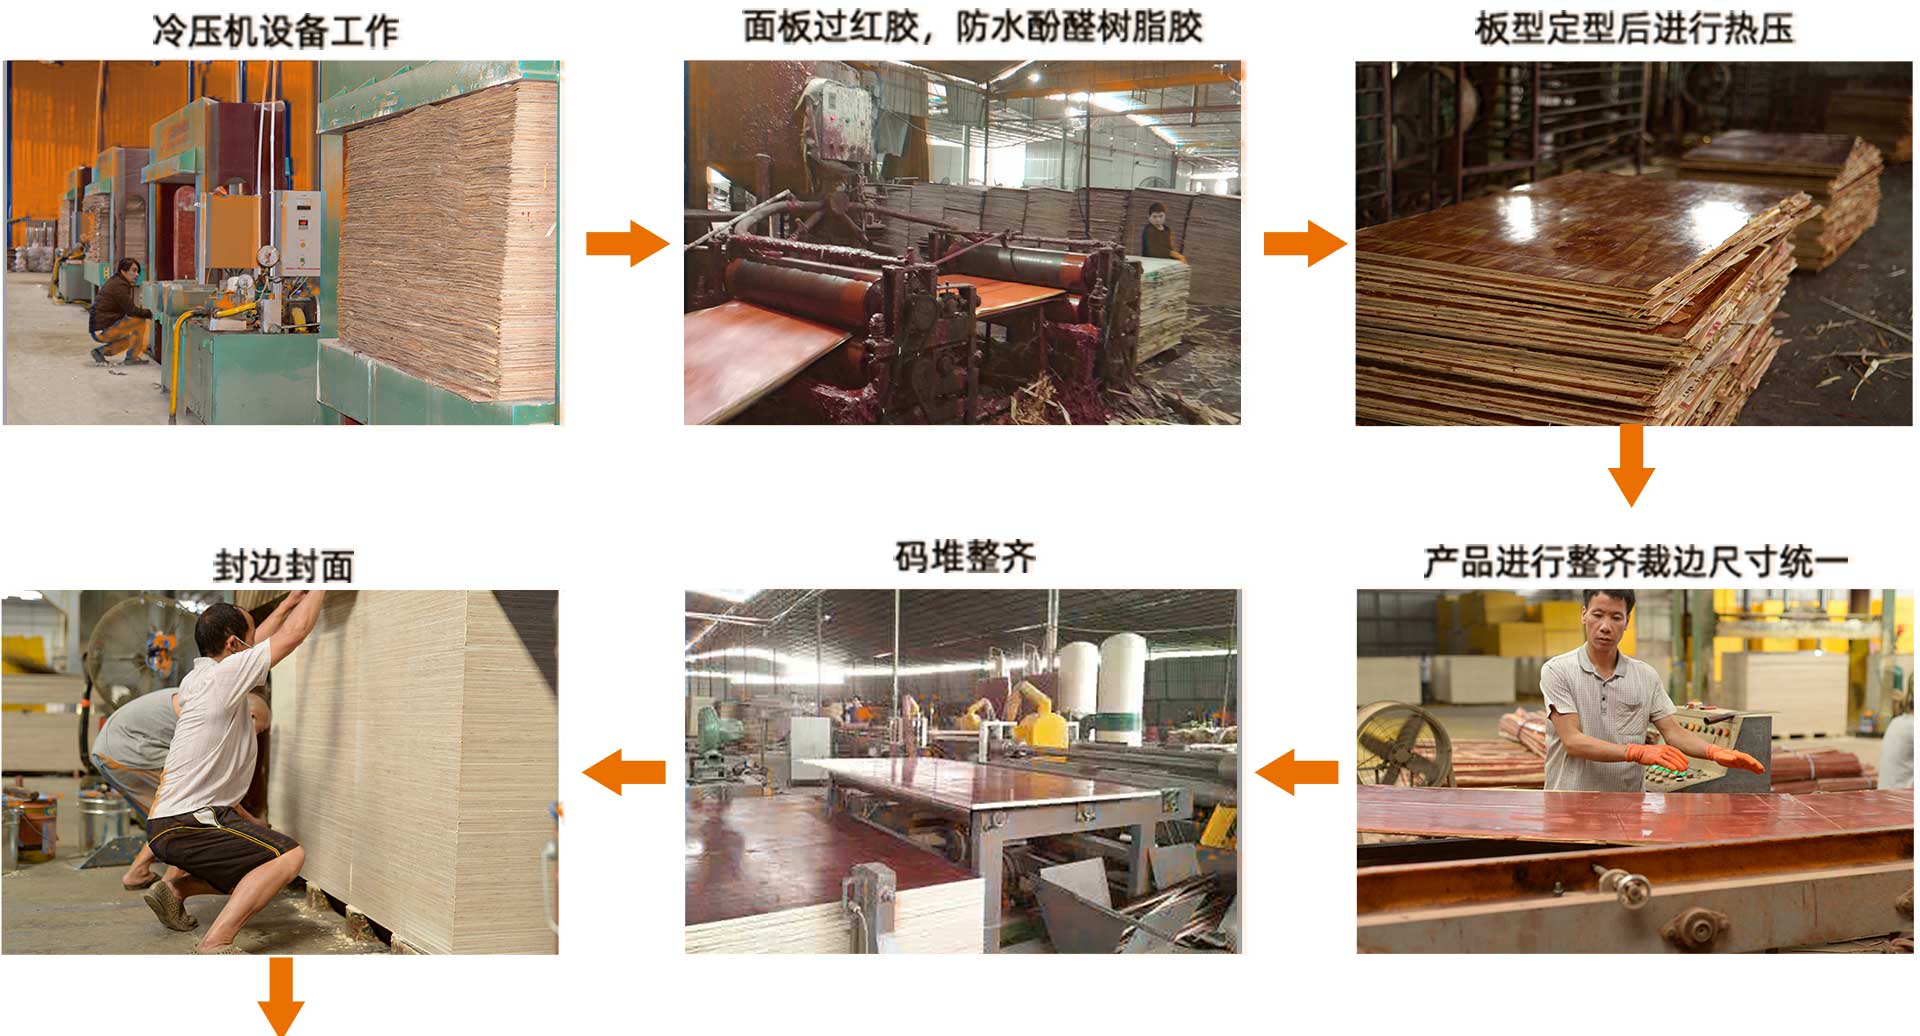 建筑模板生产-建筑木模板生产线流程图